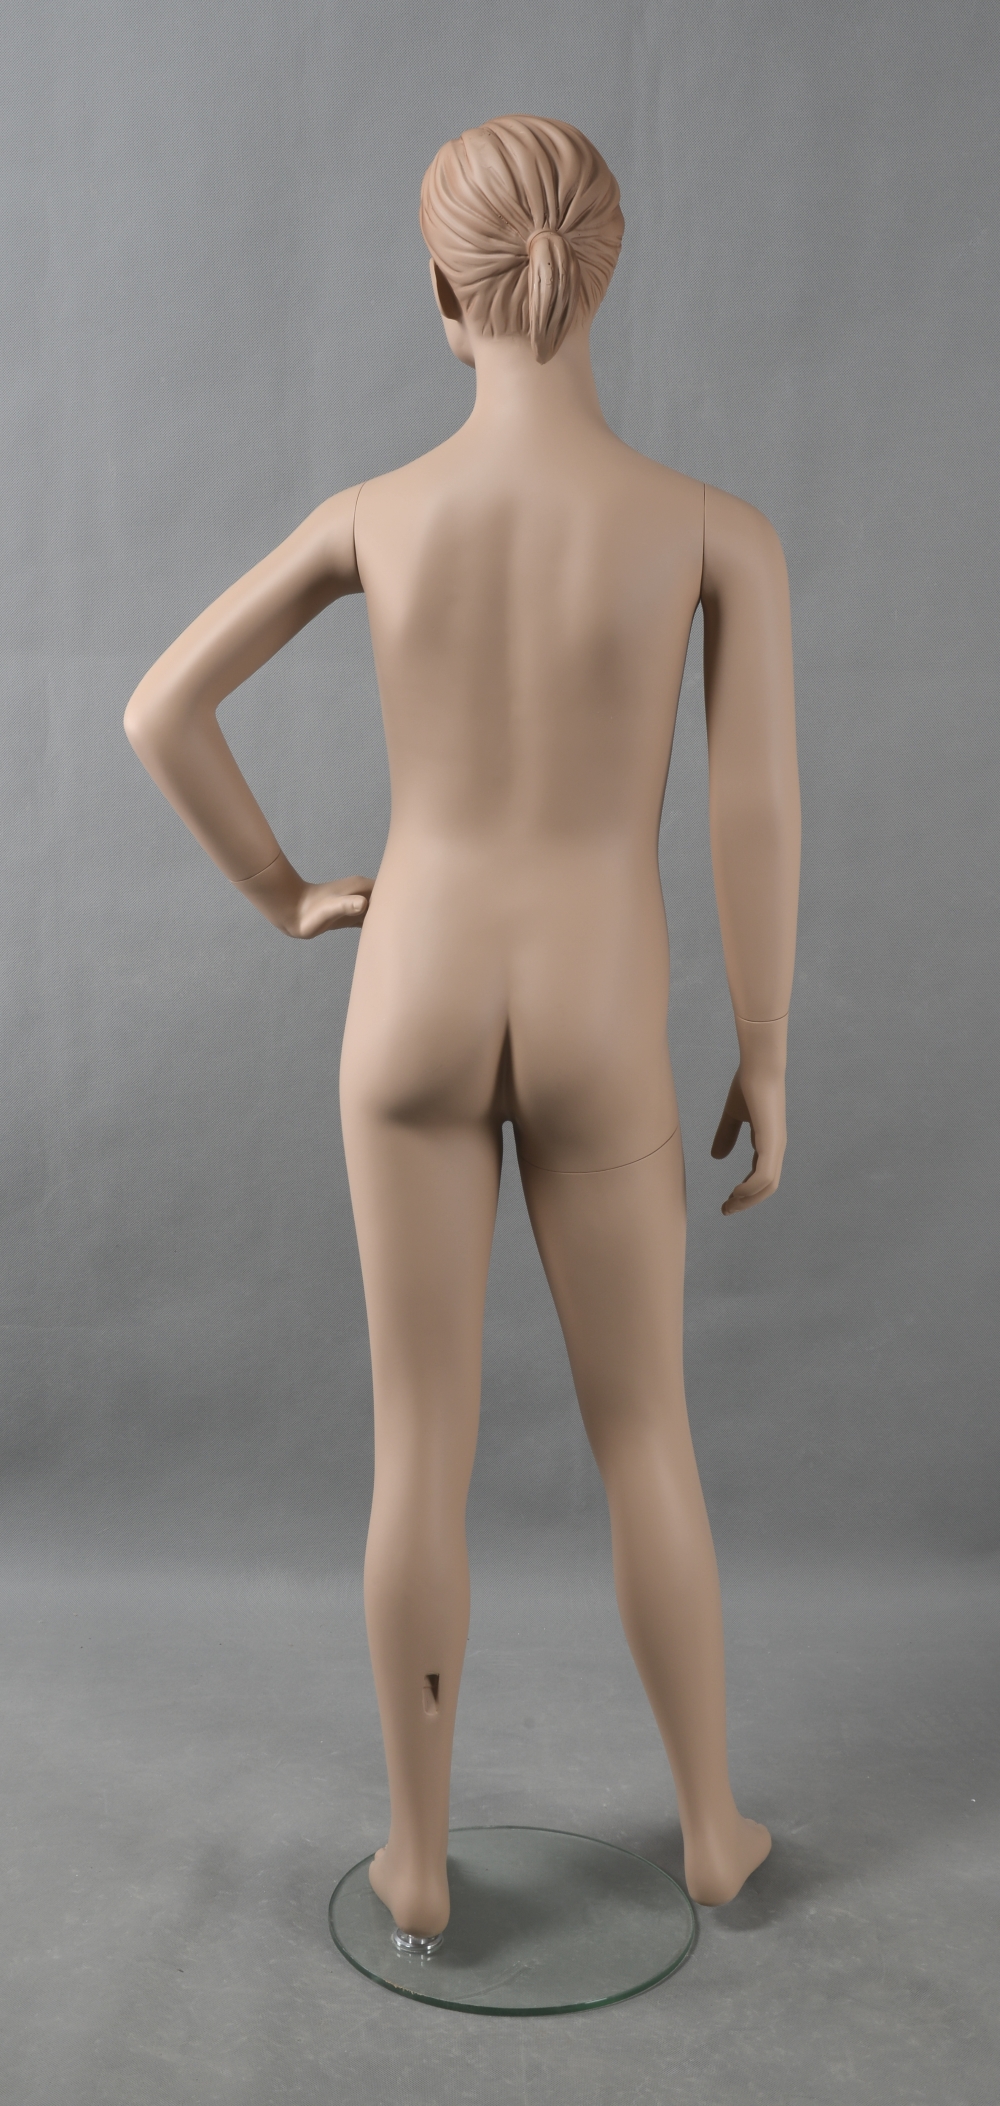 Schaufensterfigur "Bodysculpt" EVO2 Mädchen 10 Jahre hautfarbe